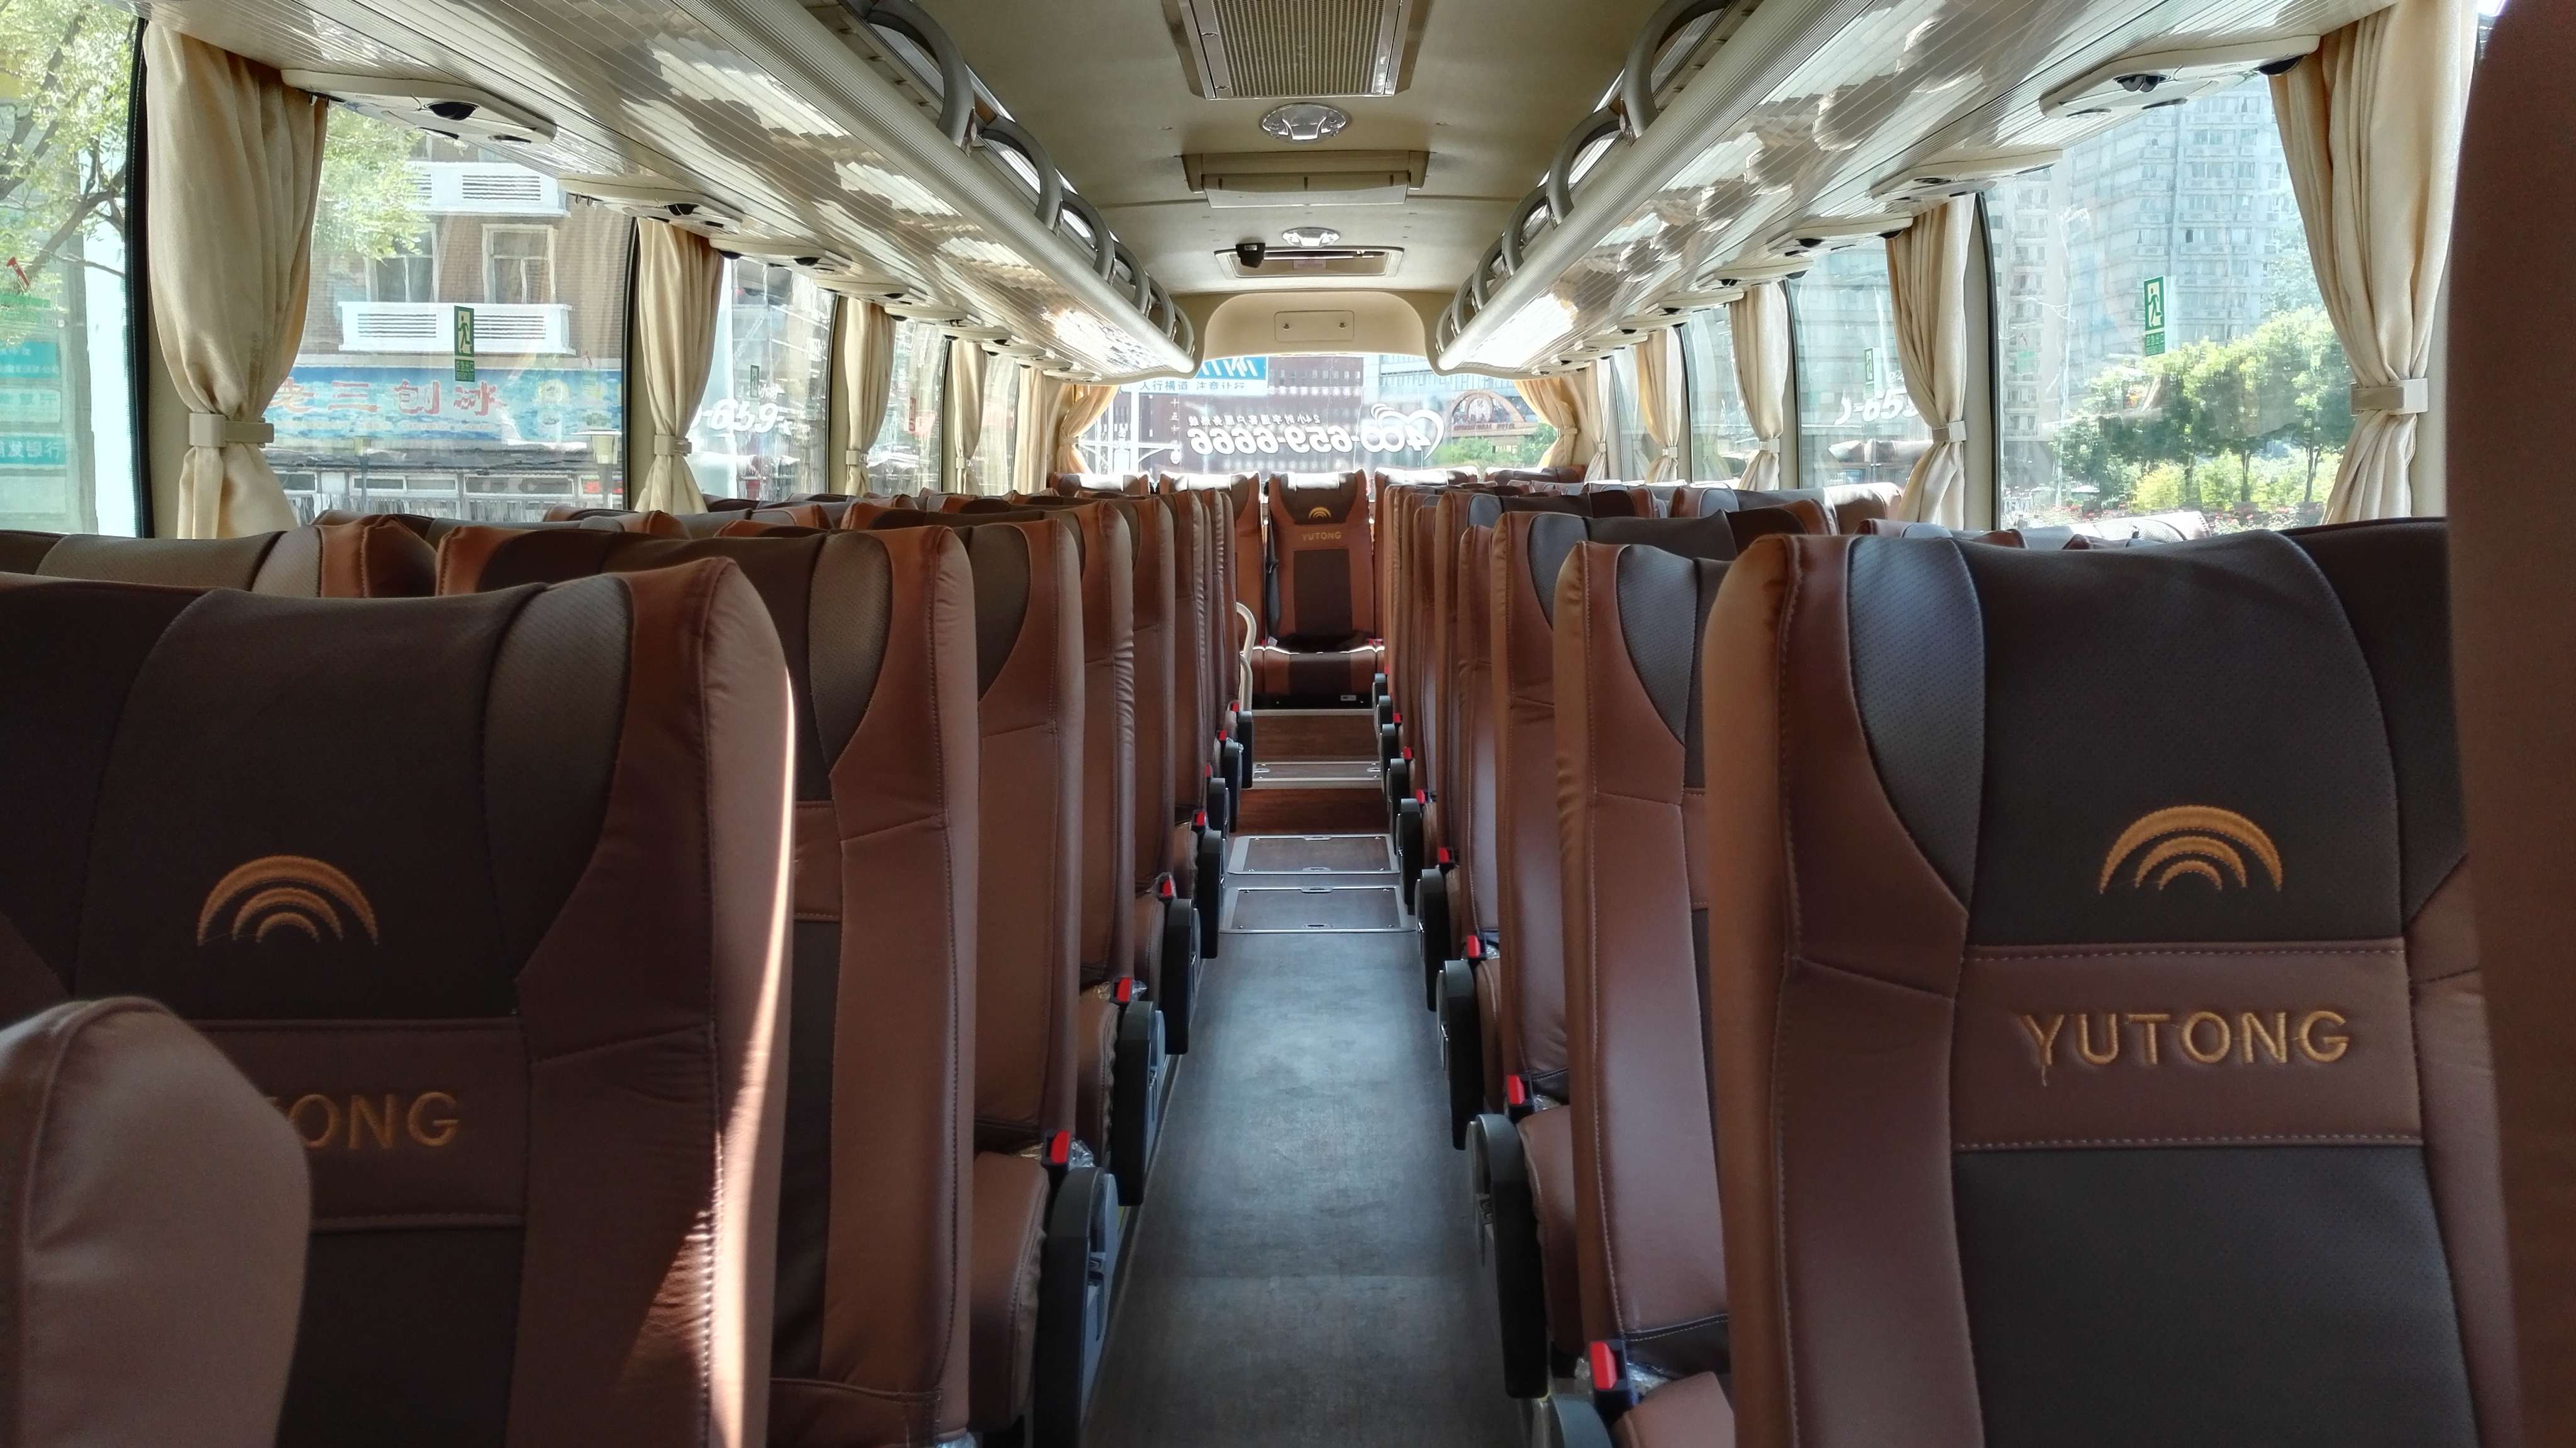 XML6700考斯特纯电动客车-厦门金龙旅行车有限公司